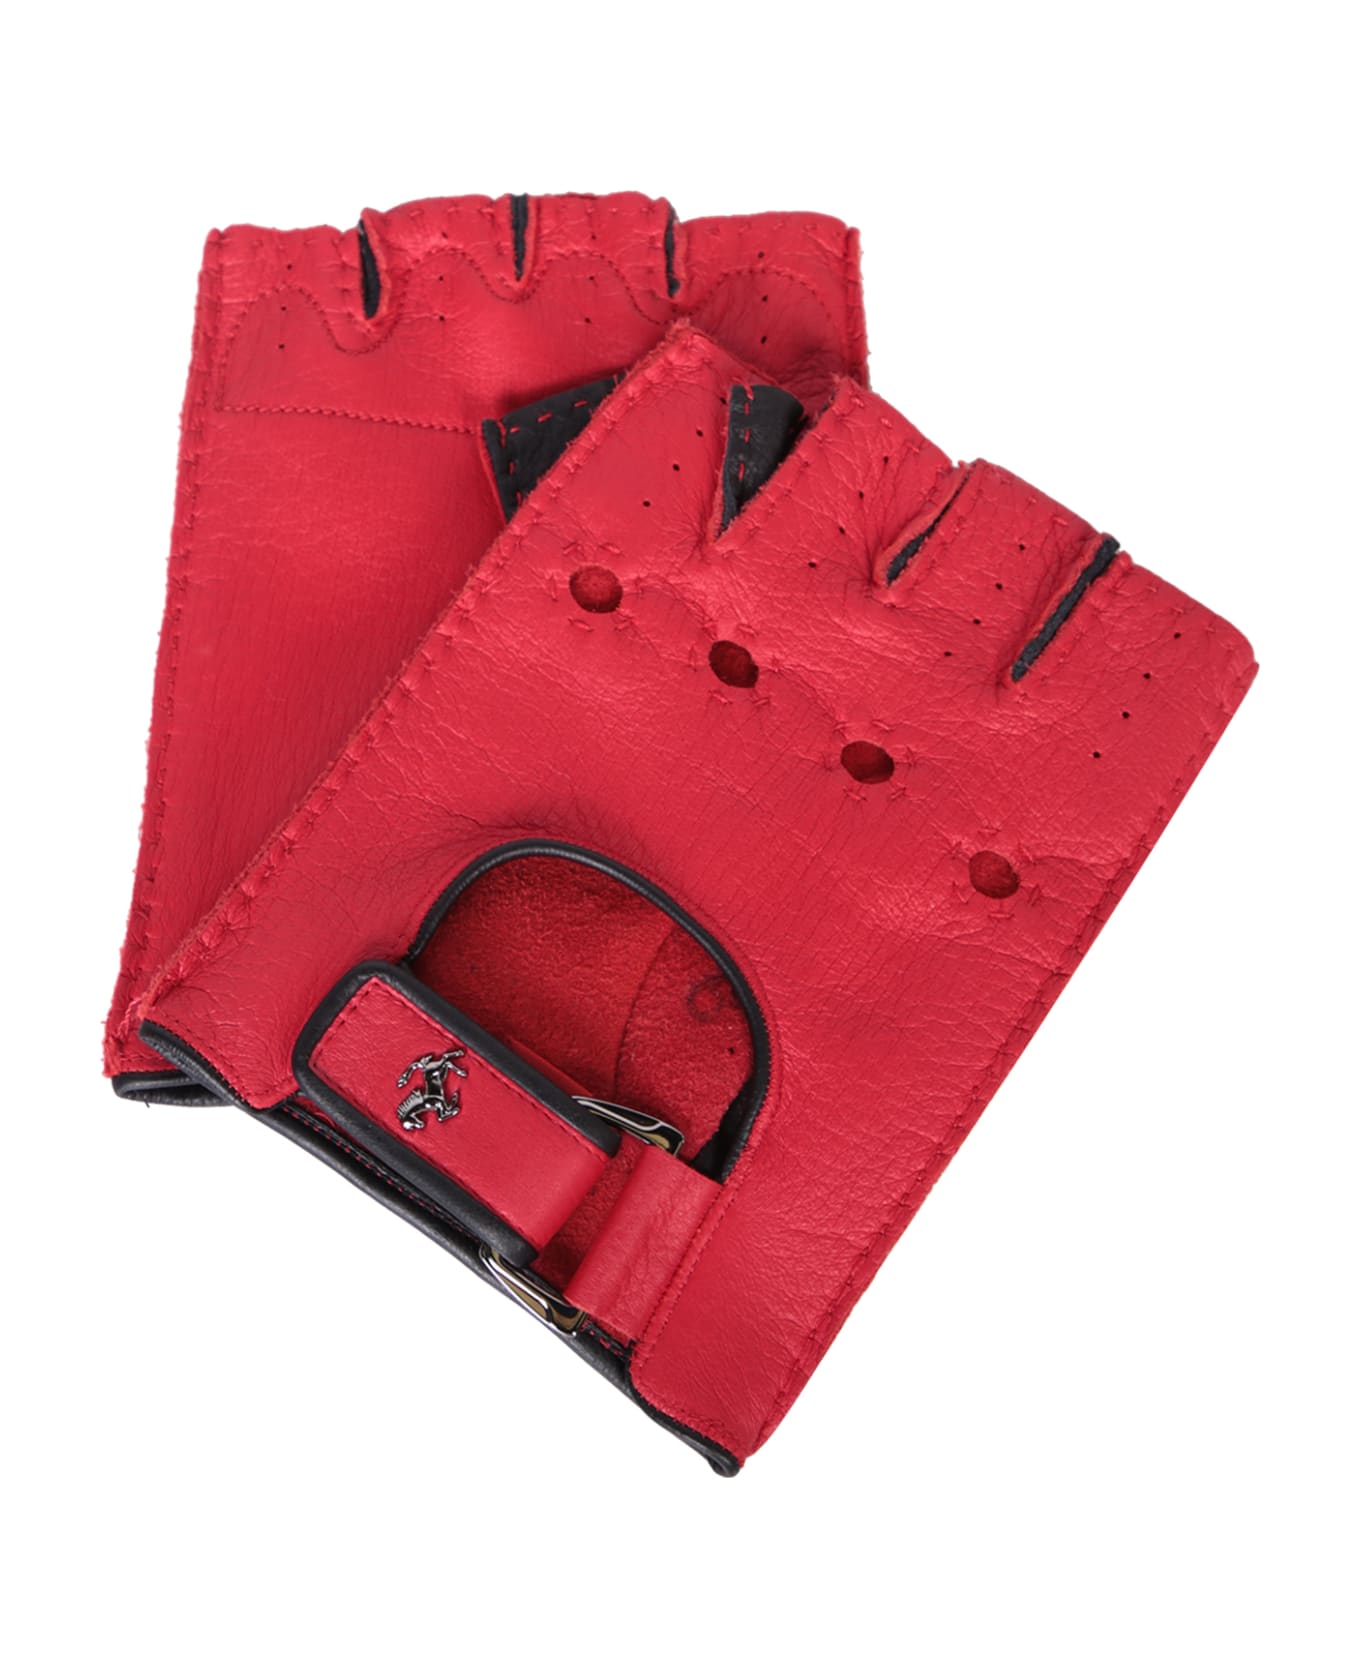 Ferrari Red Leather Fingerless Gloves - Red アクセサリー